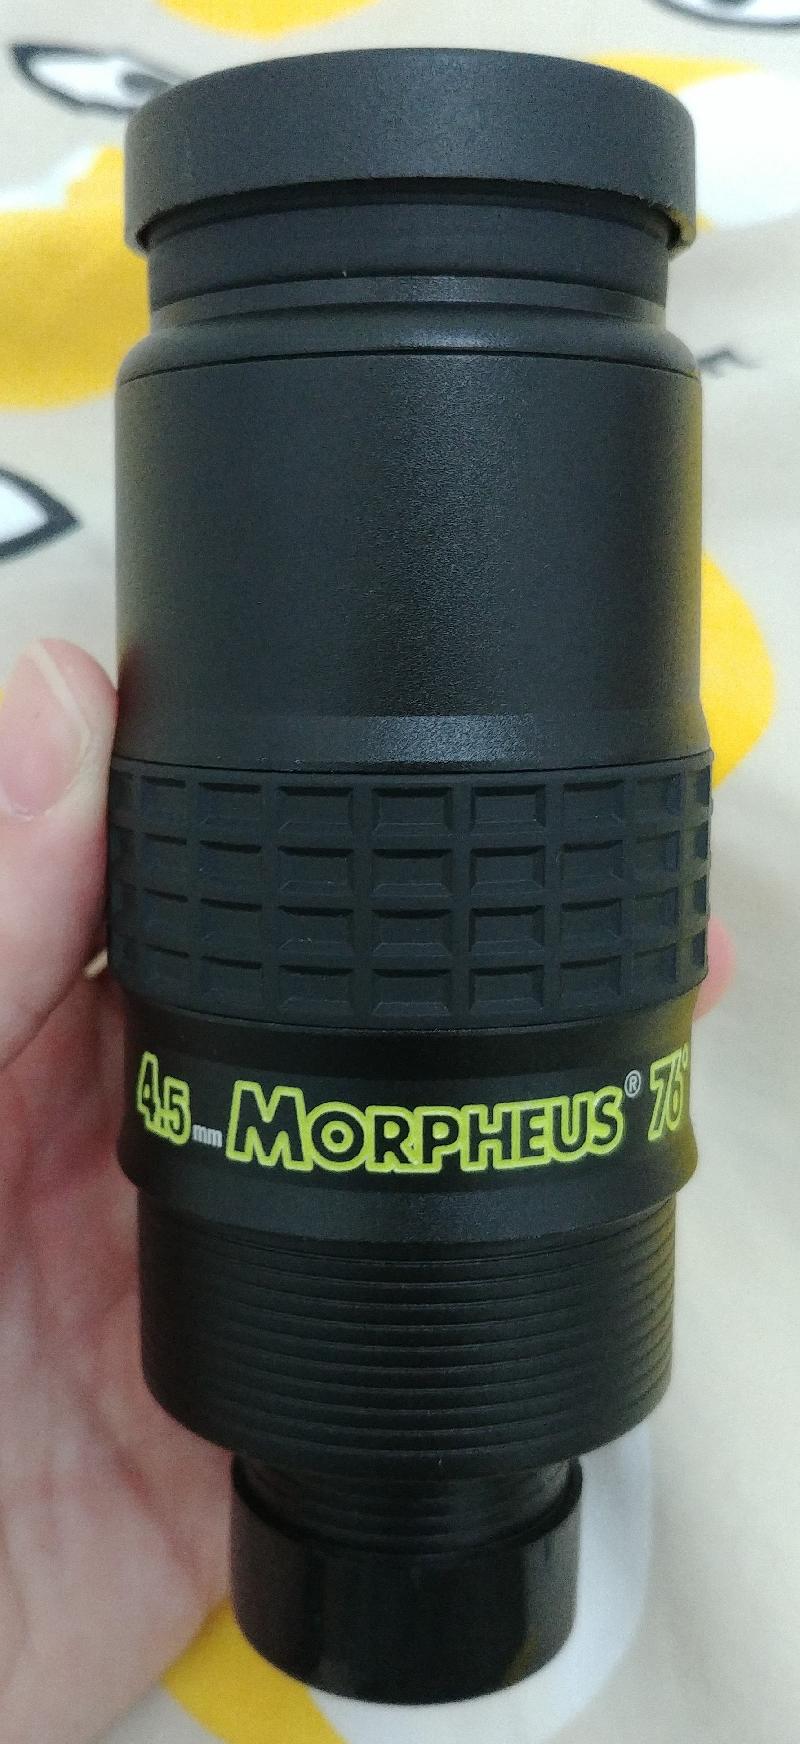 Morpheus 4.5